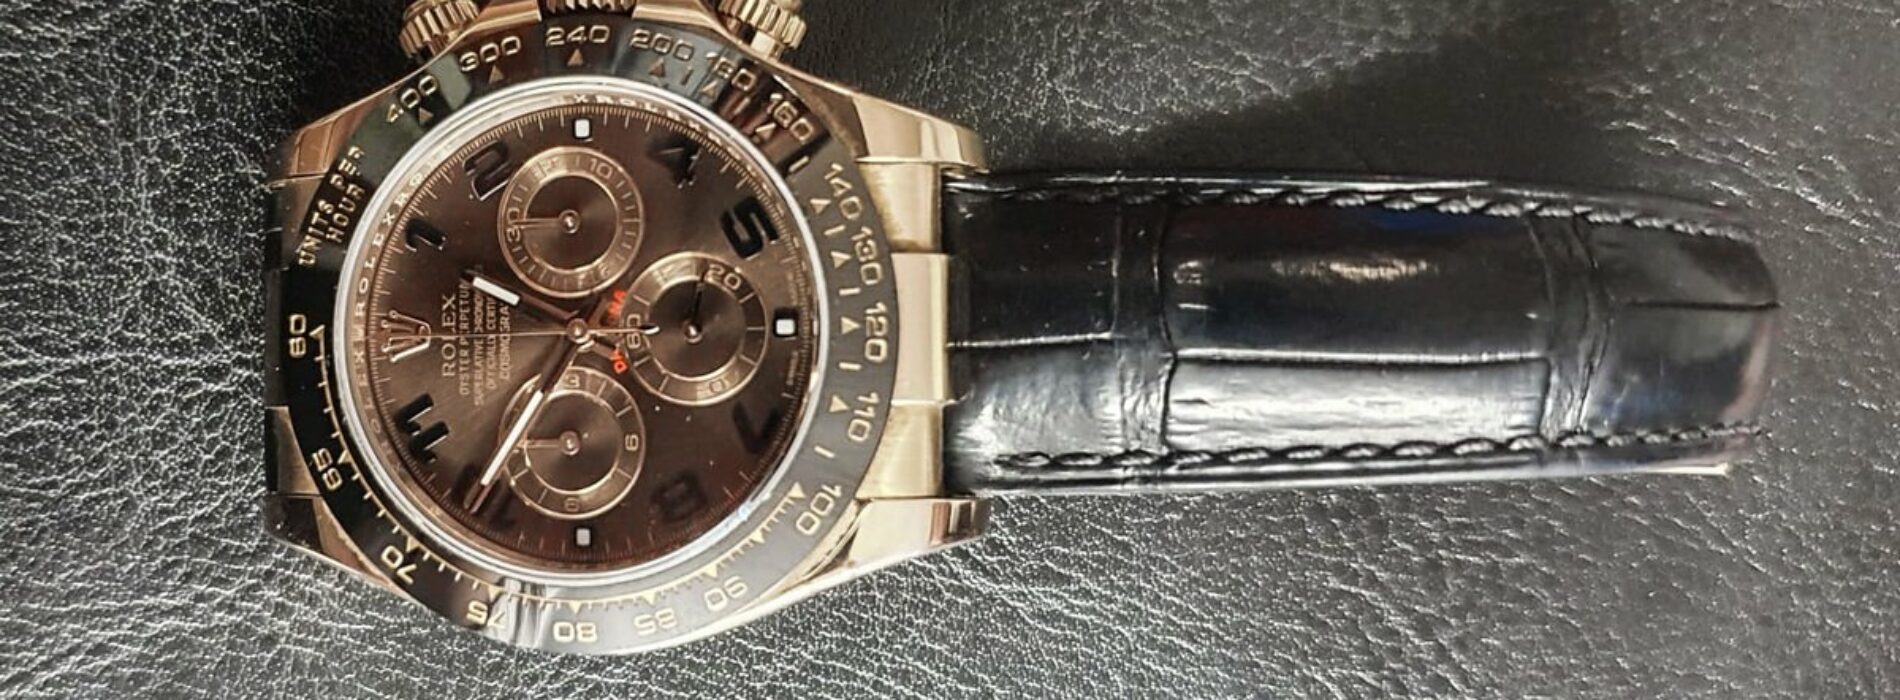 Ukradł zegarek warty 100 tysięcy złotych